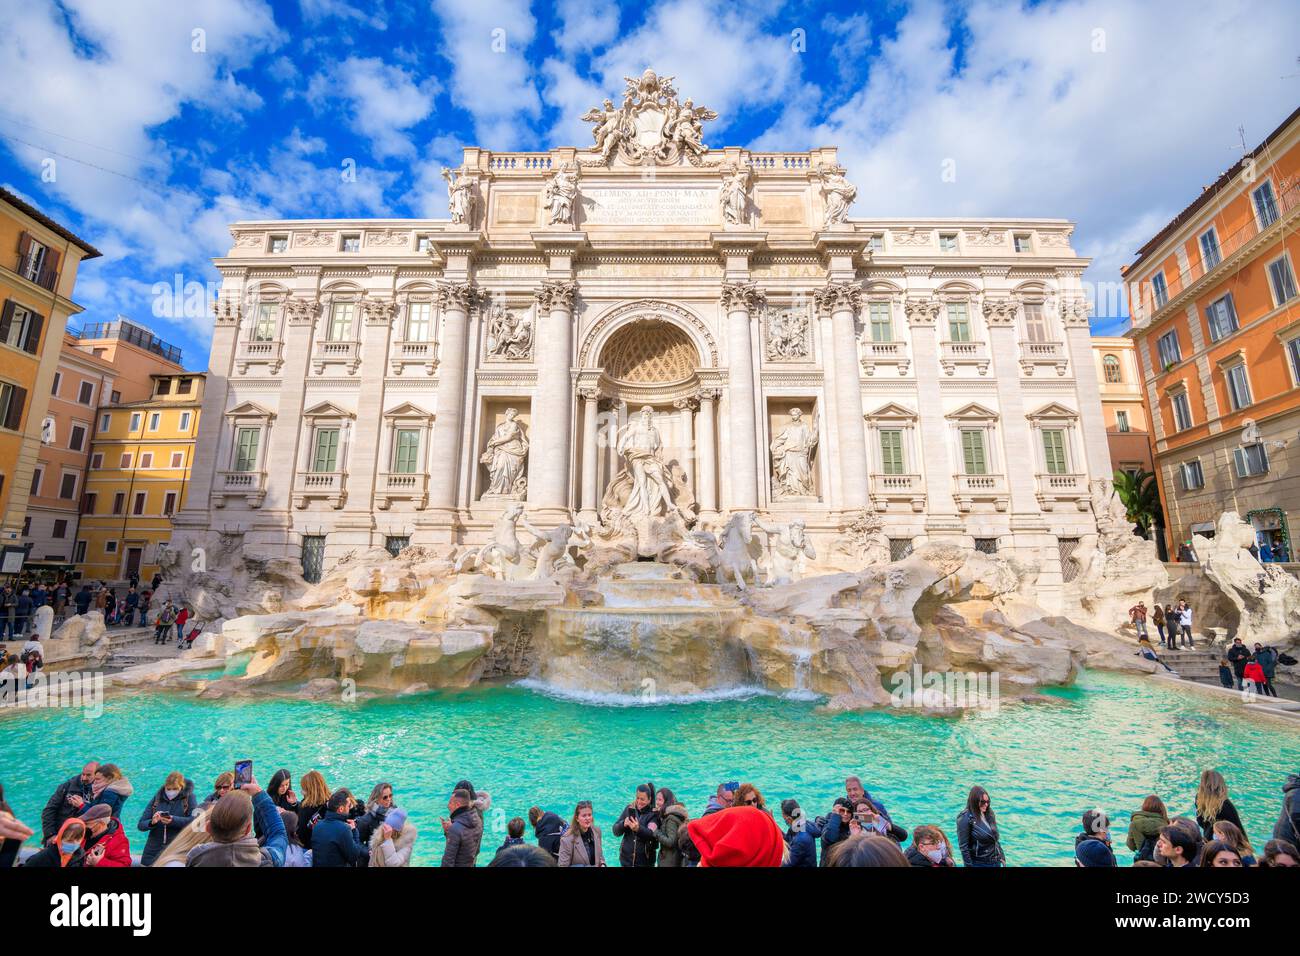 ROMA, ITALIA - 7 DICEMBRE 2021: I visitatori potranno ammirare la storica Fontana di Trevi del XVIII secolo in una splendida giornata. Foto Stock